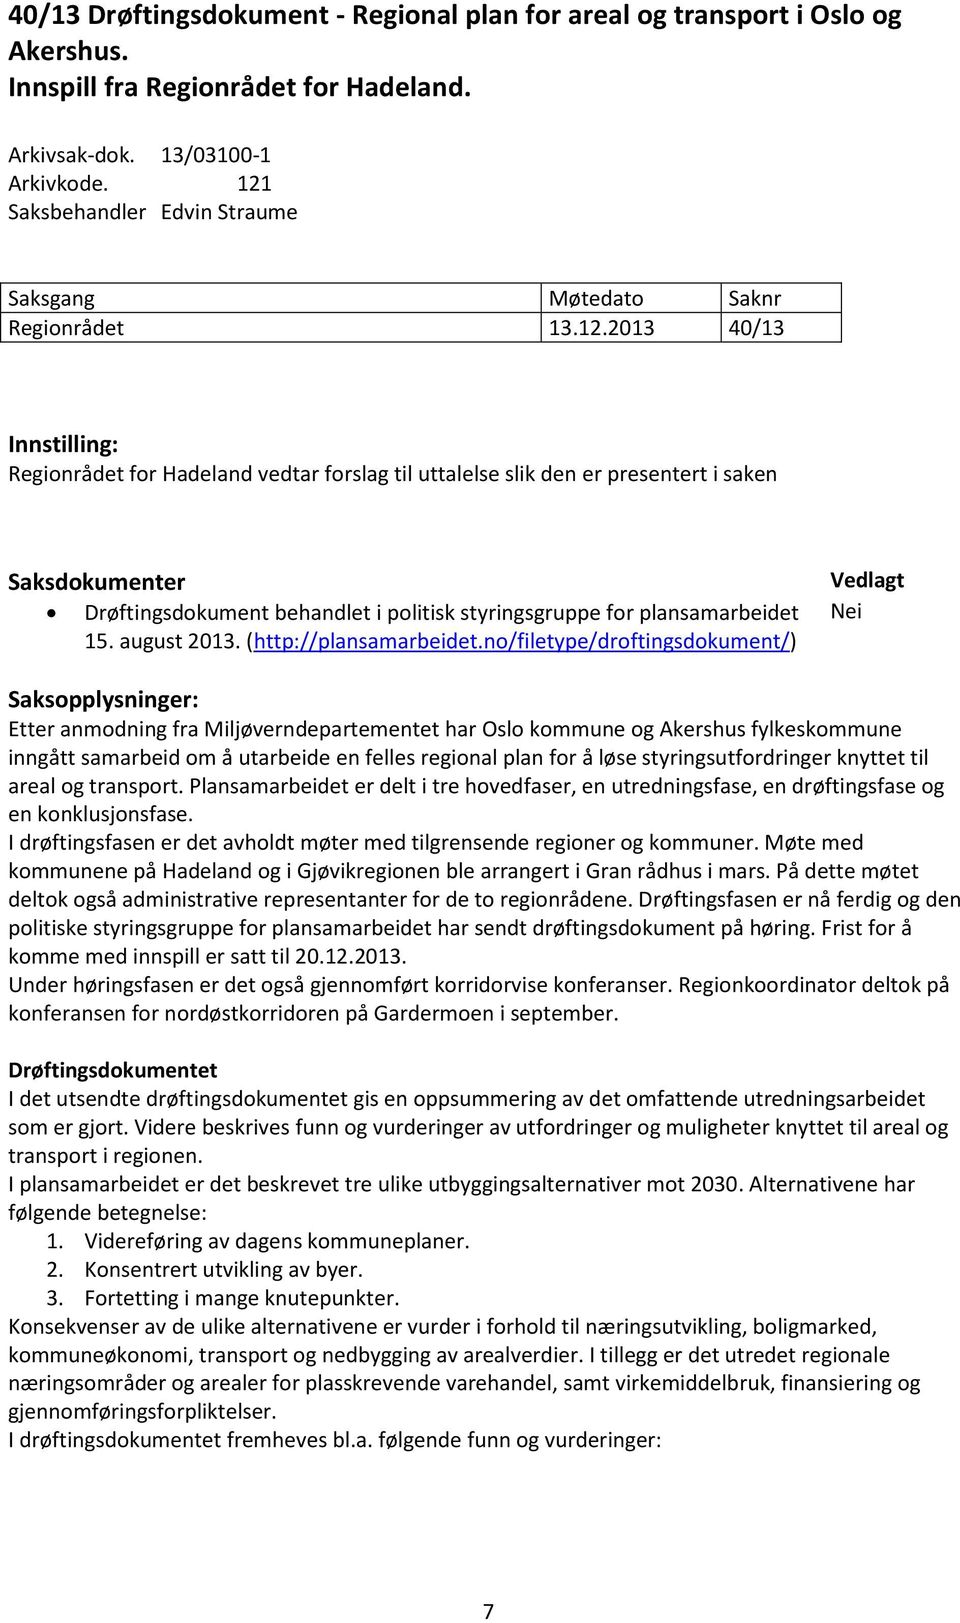 Drøftingsdokument behandlet i politisk styringsgruppe for plansamarbeidet 15. august 2013. (http://plansamarbeidet.